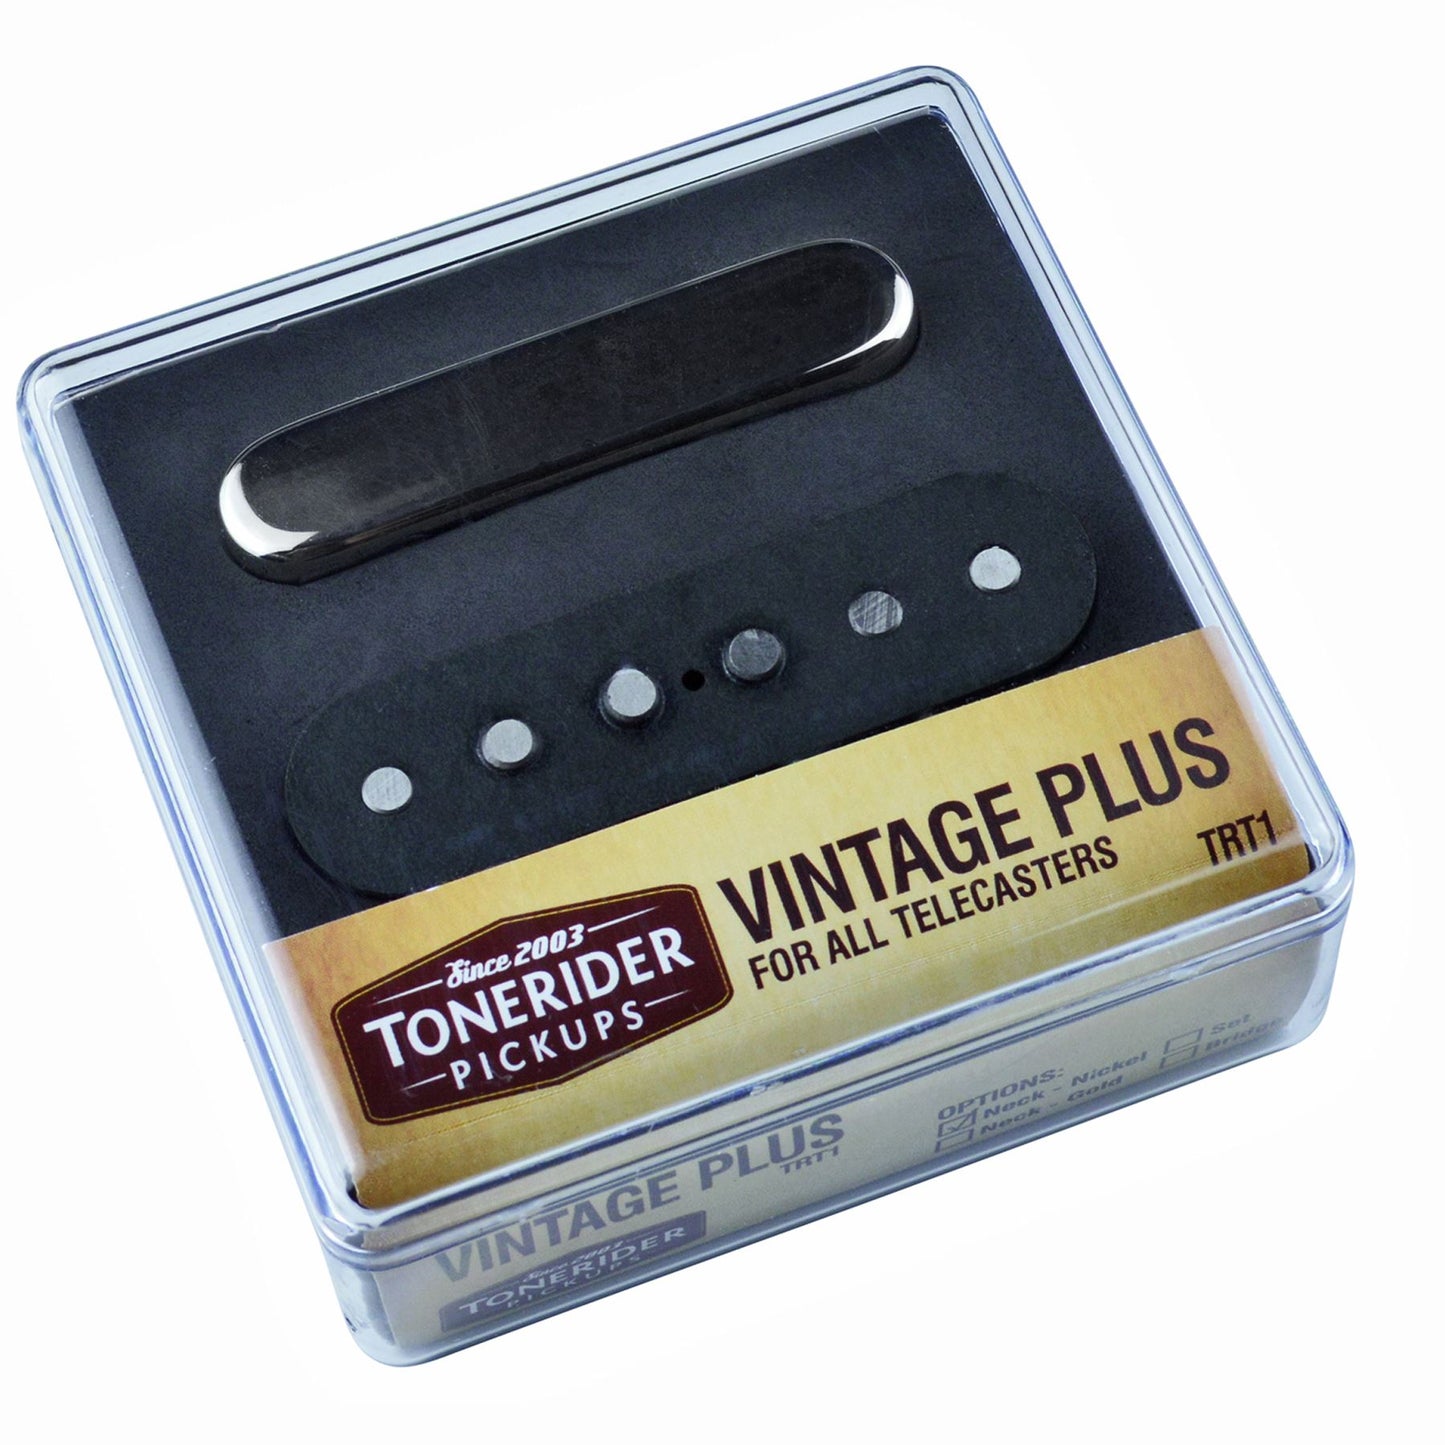 Tonerider Vintage Plus Pickup set for Telecaster